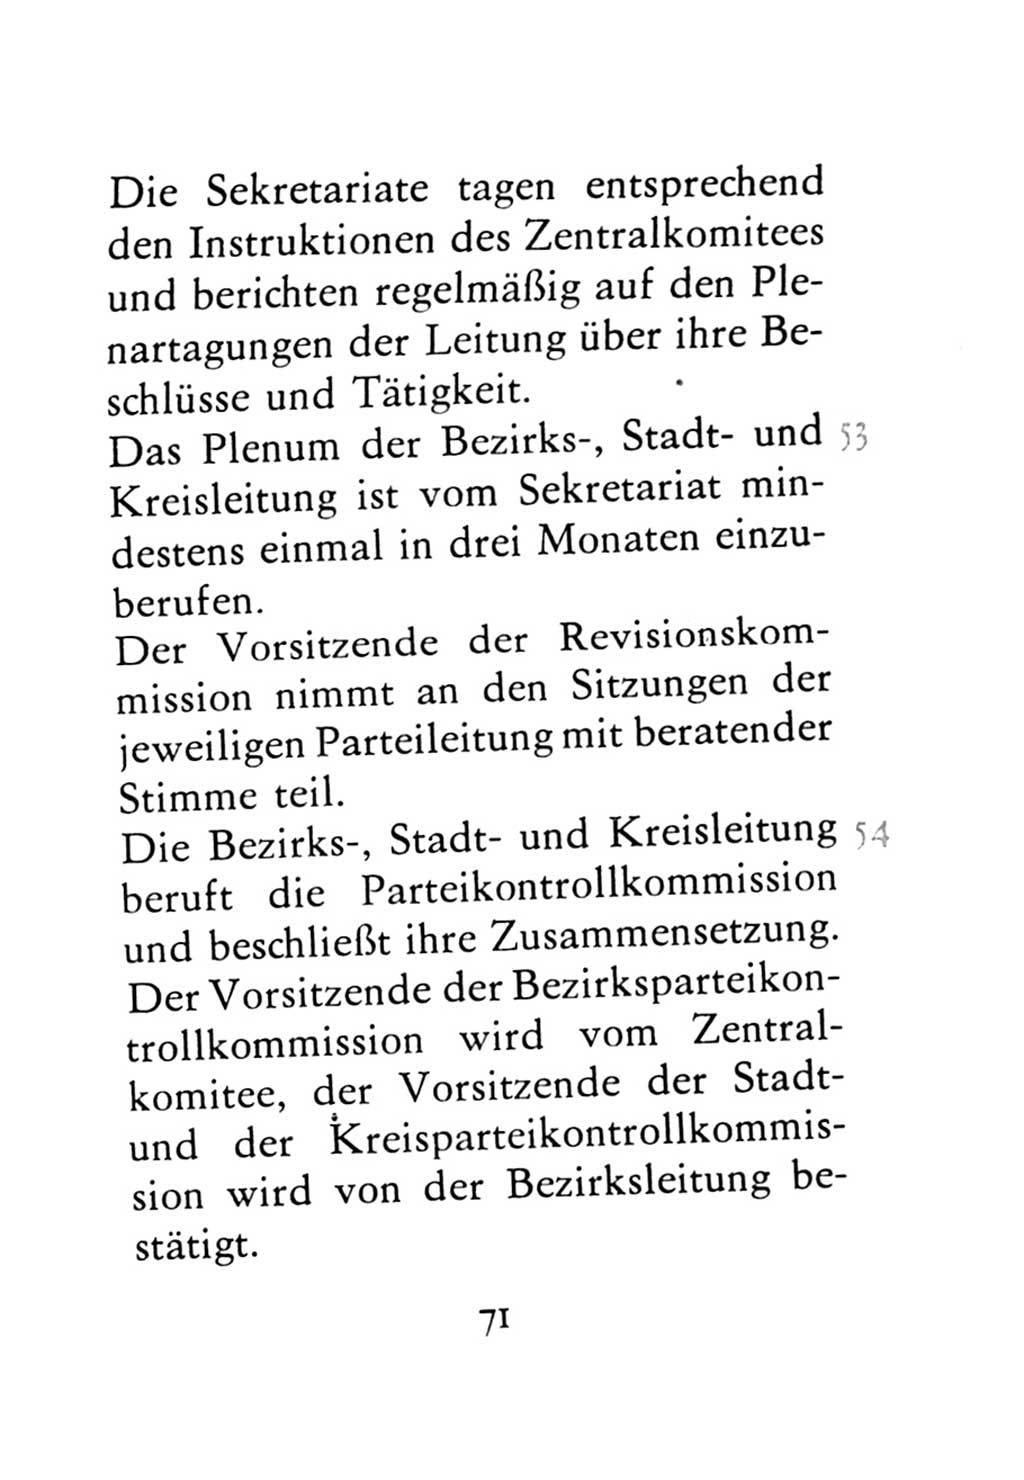 Statut der Sozialistischen Einheitspartei Deutschlands (SED) 1971, Seite 71 (St. SED DDR 1971, S. 71)